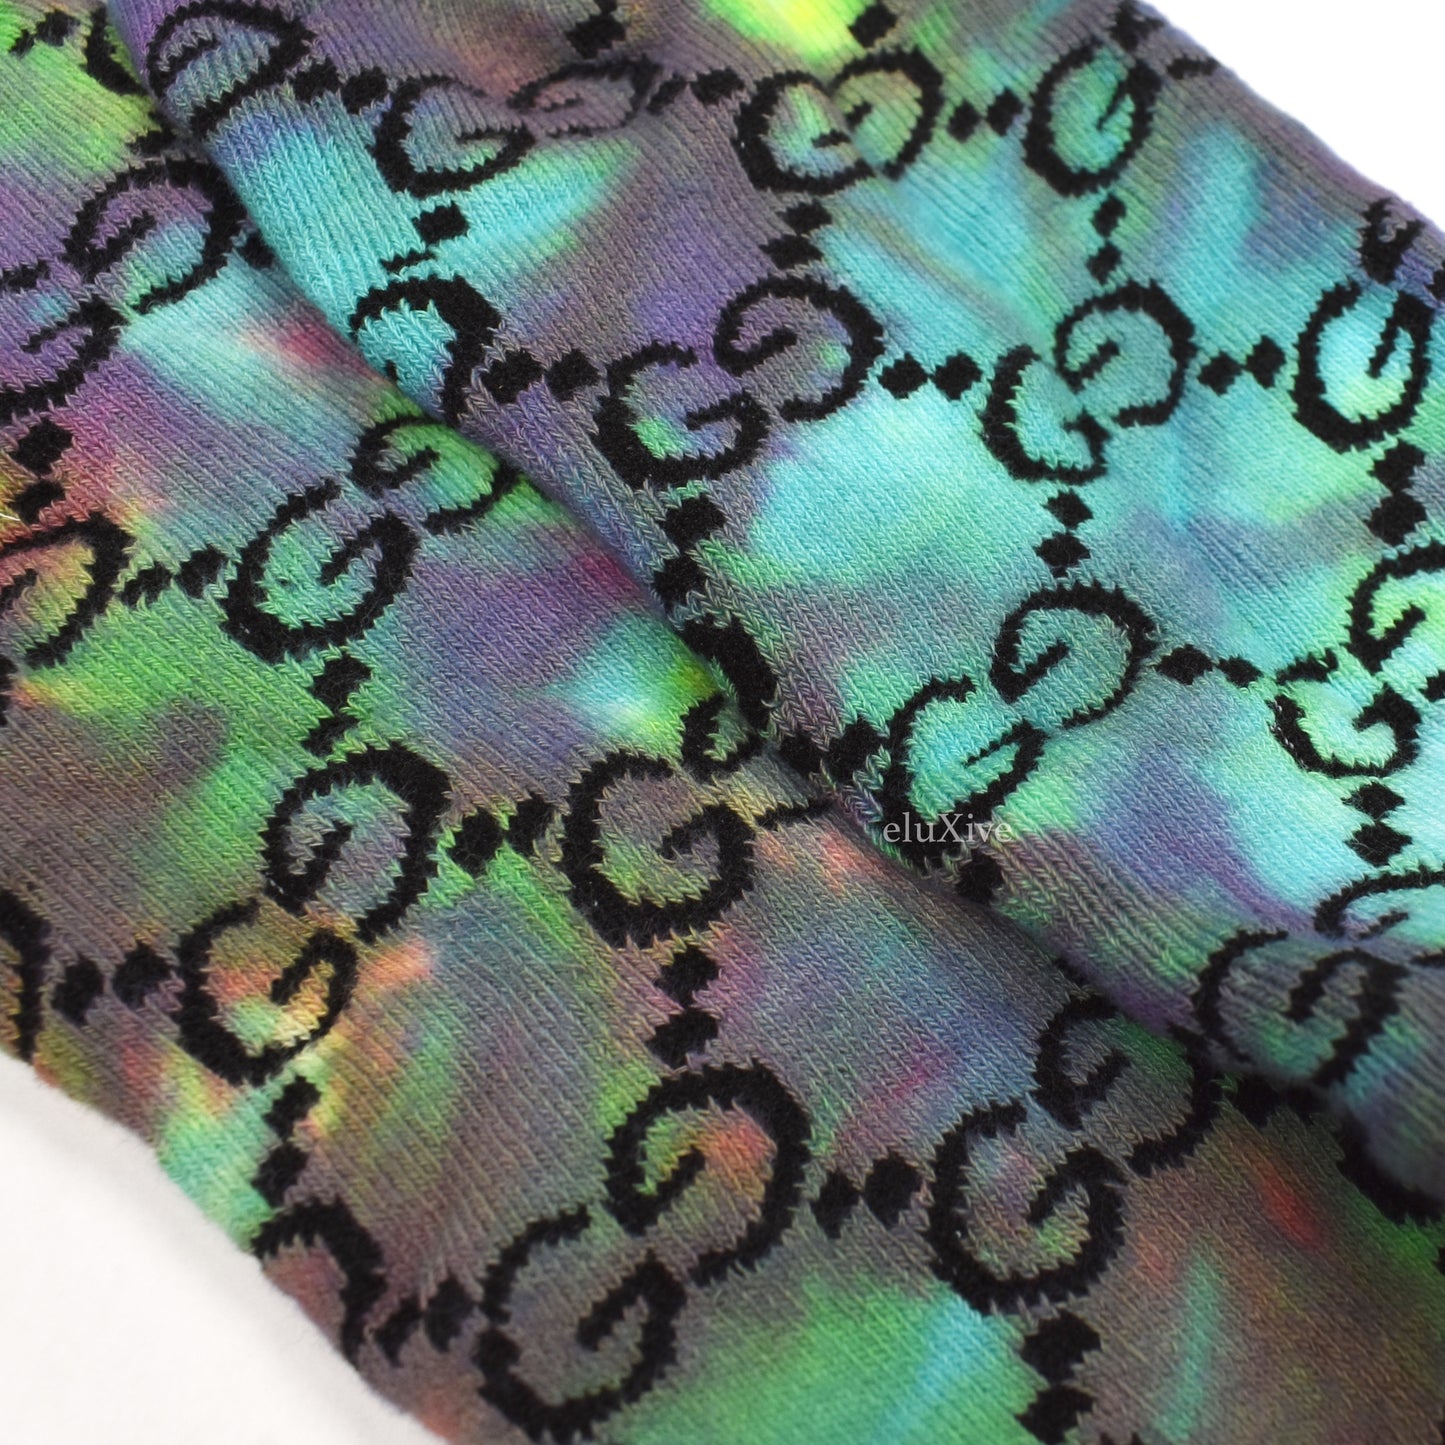 Imran Potato - Tie-Dye 'Gucci' Logo Knit Socks